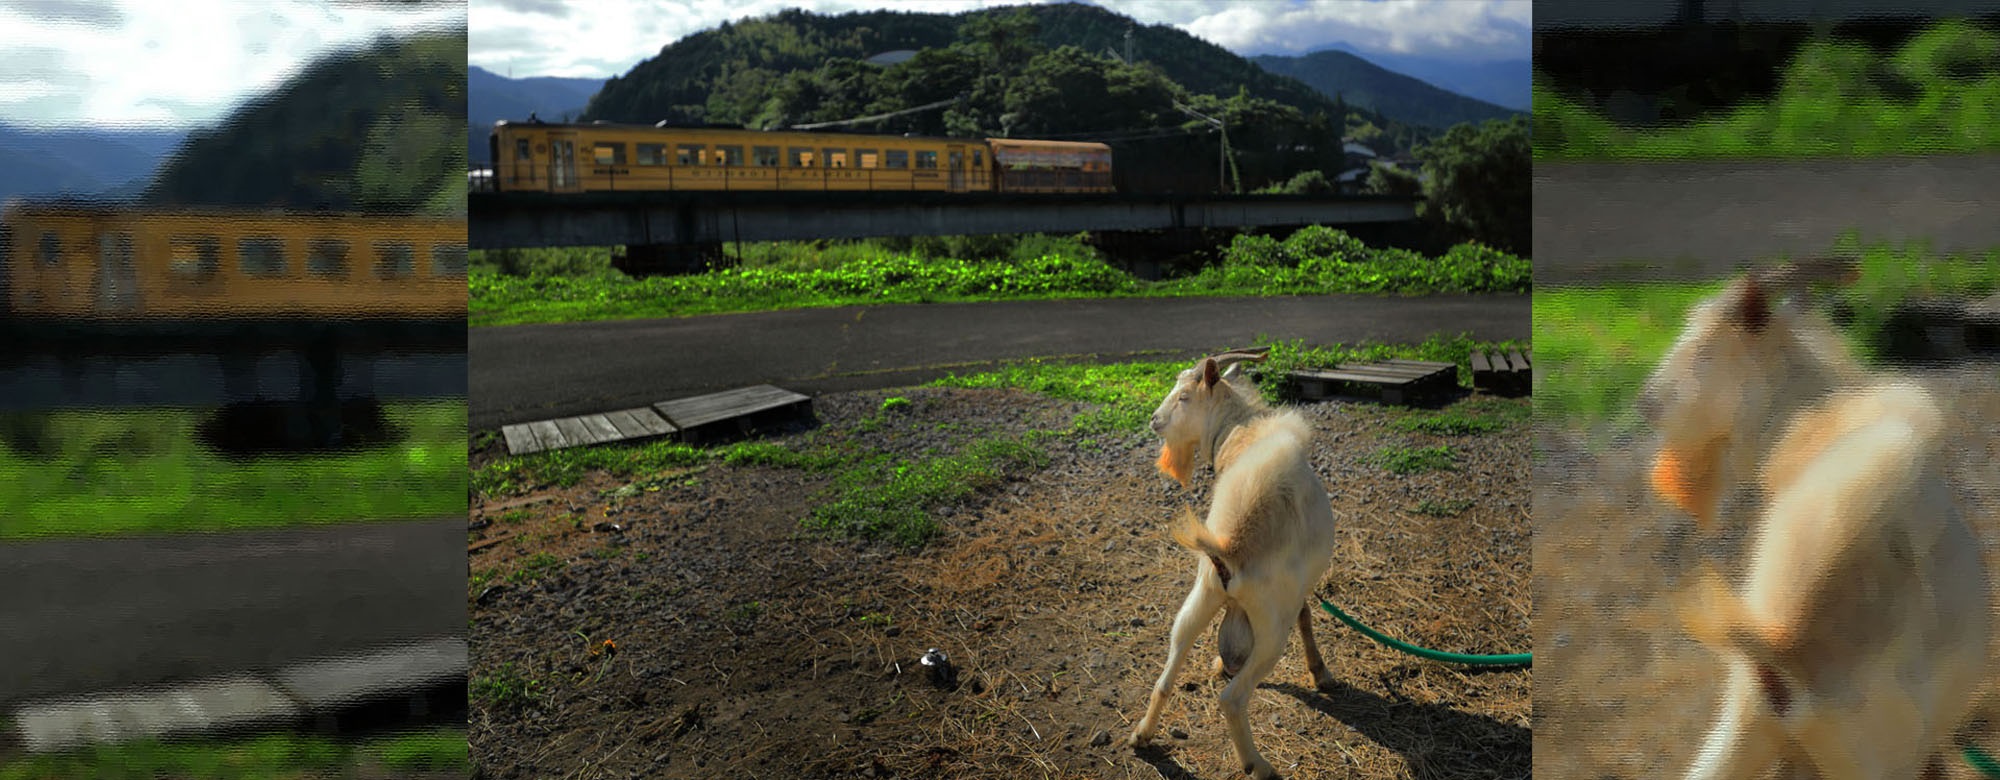 電車とヤギの画像